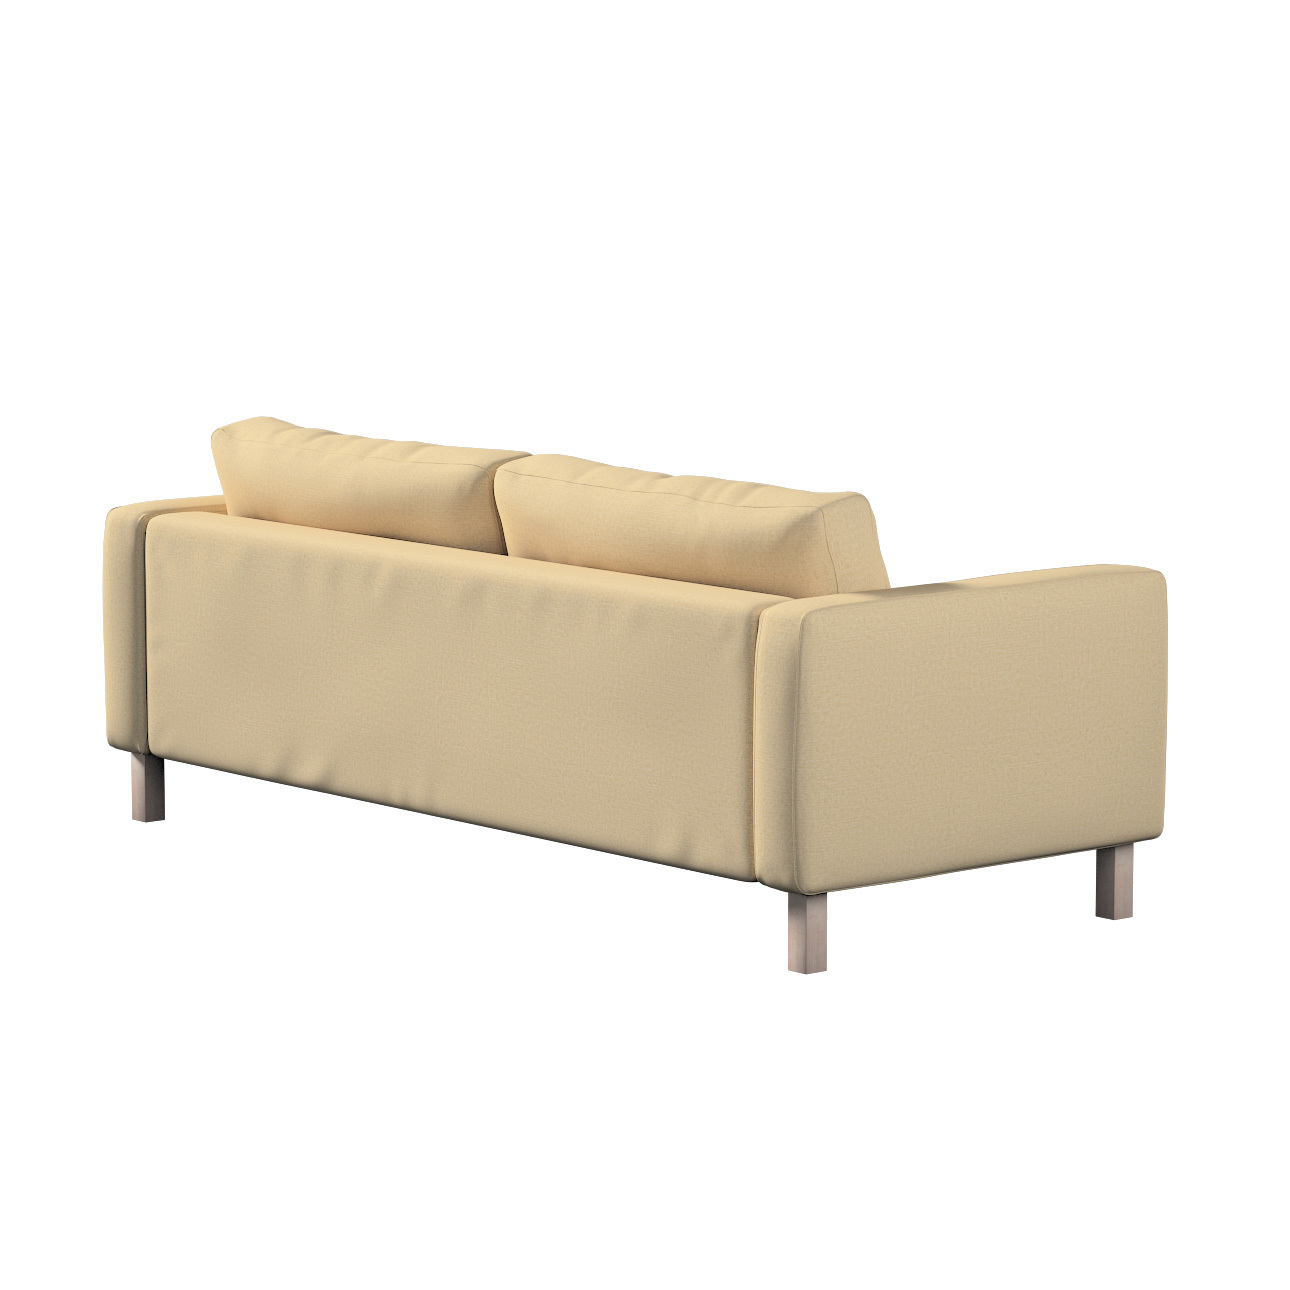 Bezug für Karlstad 3-Sitzer Sofa nicht ausklappbar, kurz, sandfarben, Bezug günstig online kaufen